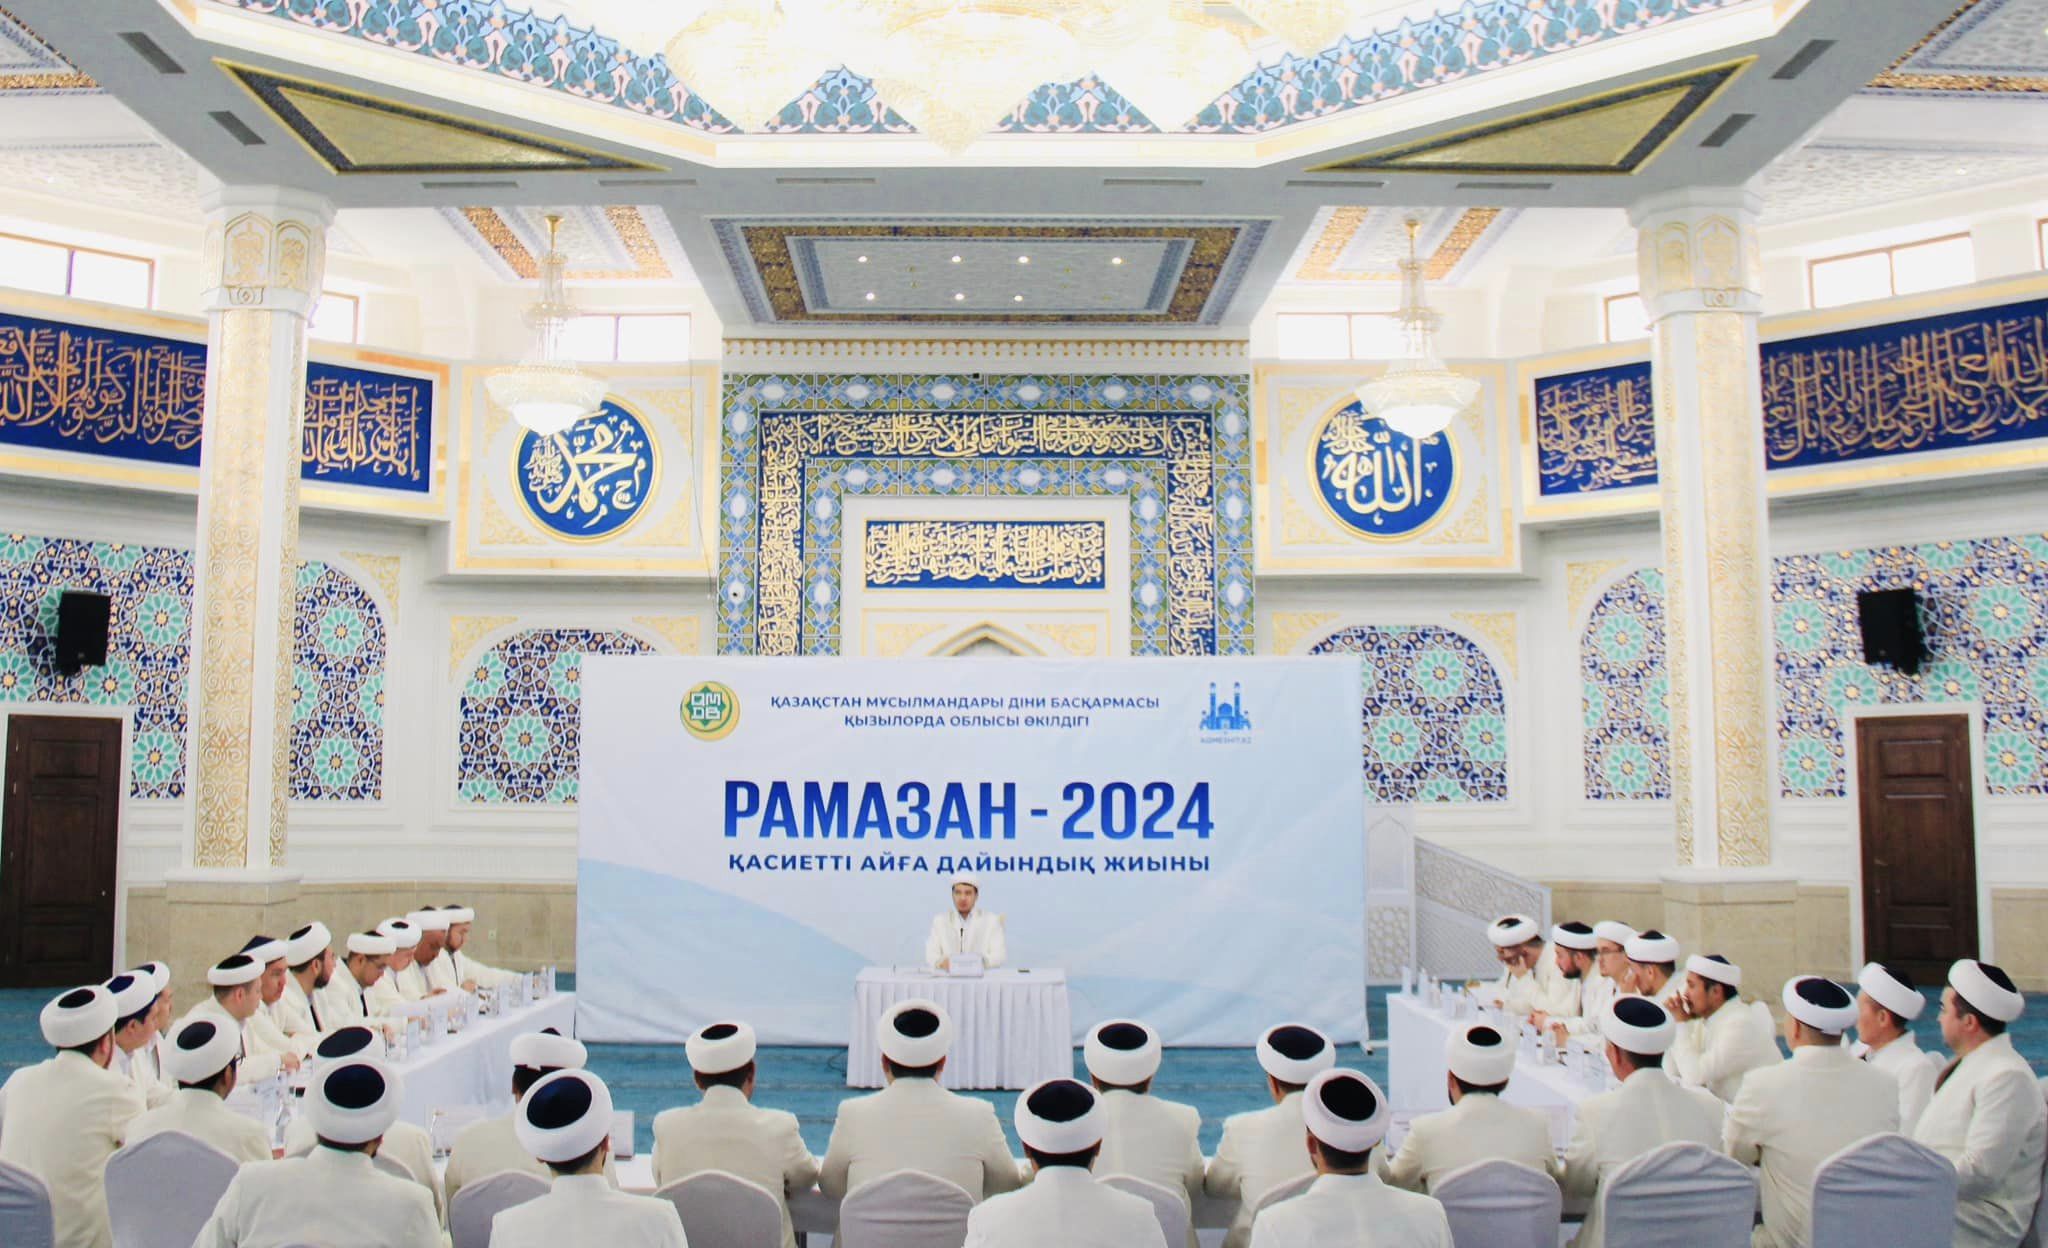 Рамазан-2024: Сыр имамдарының дайындық жиыны өтті